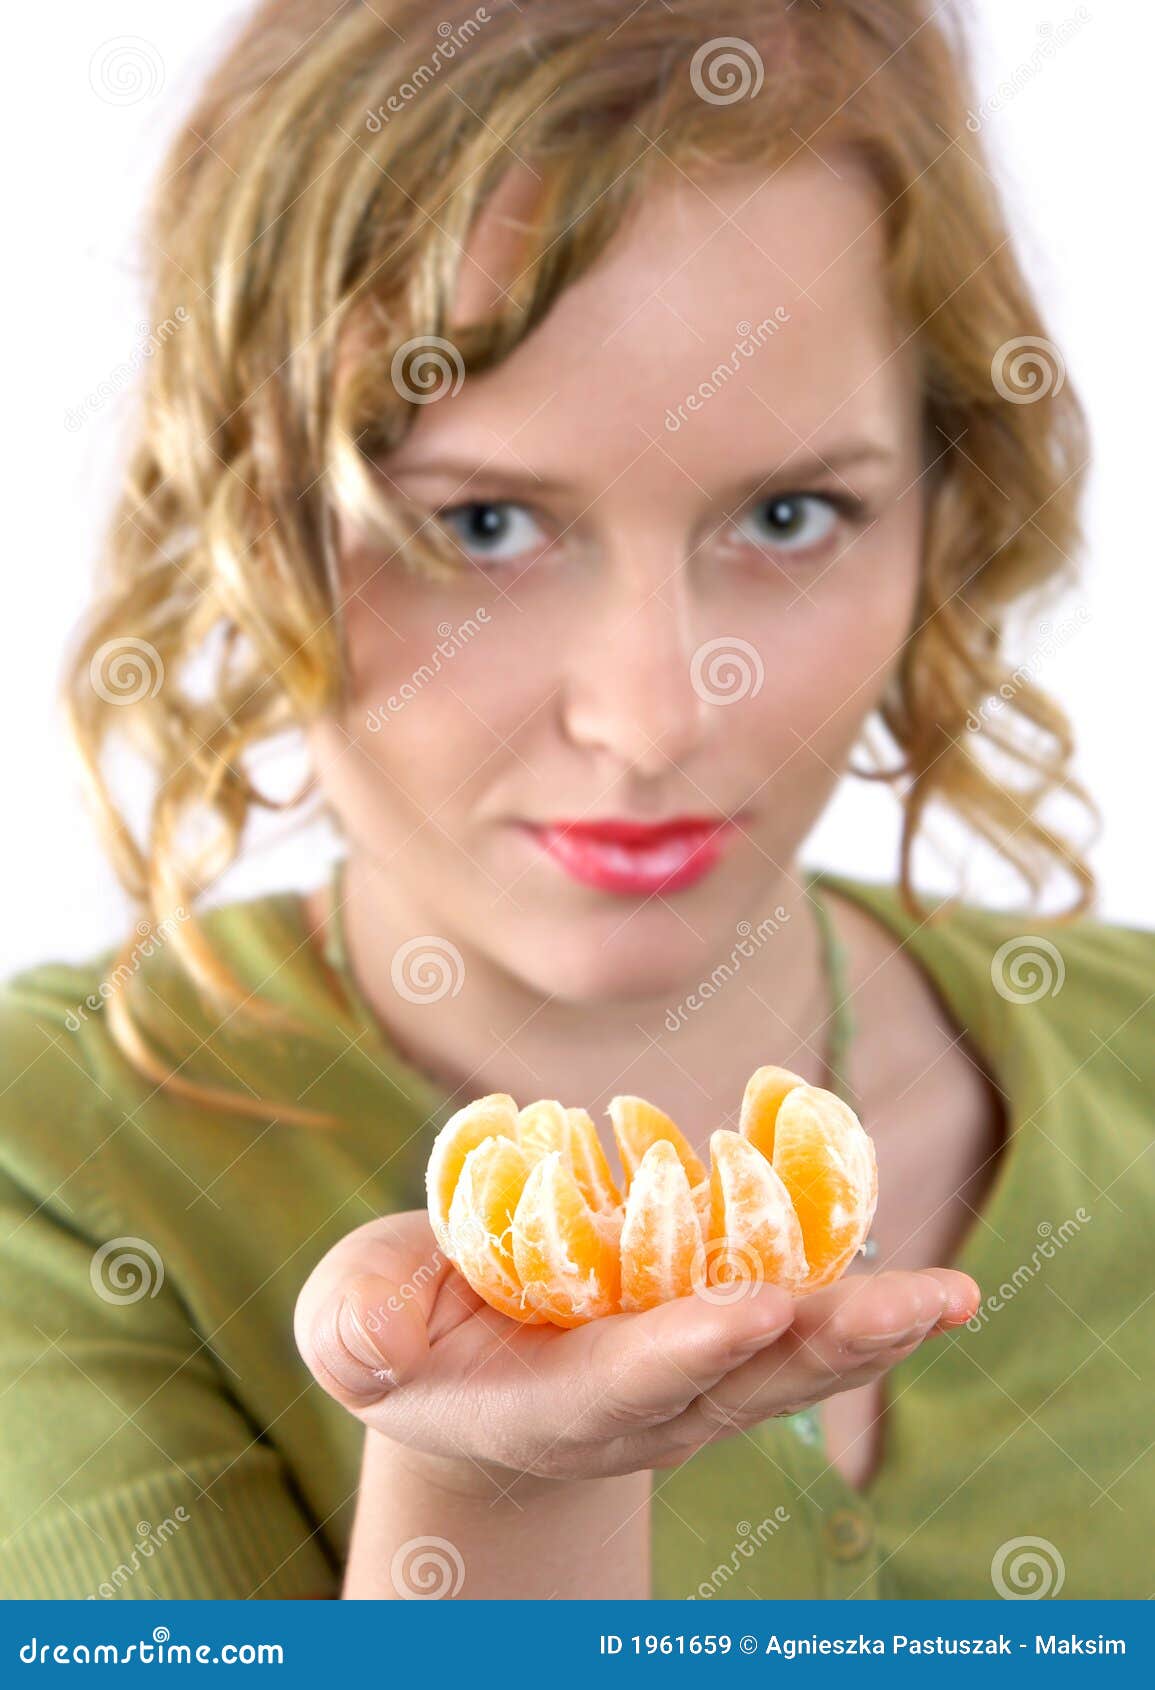 Ajuda você mesmo. A menina bonita está tentando com ele friut do mandarino